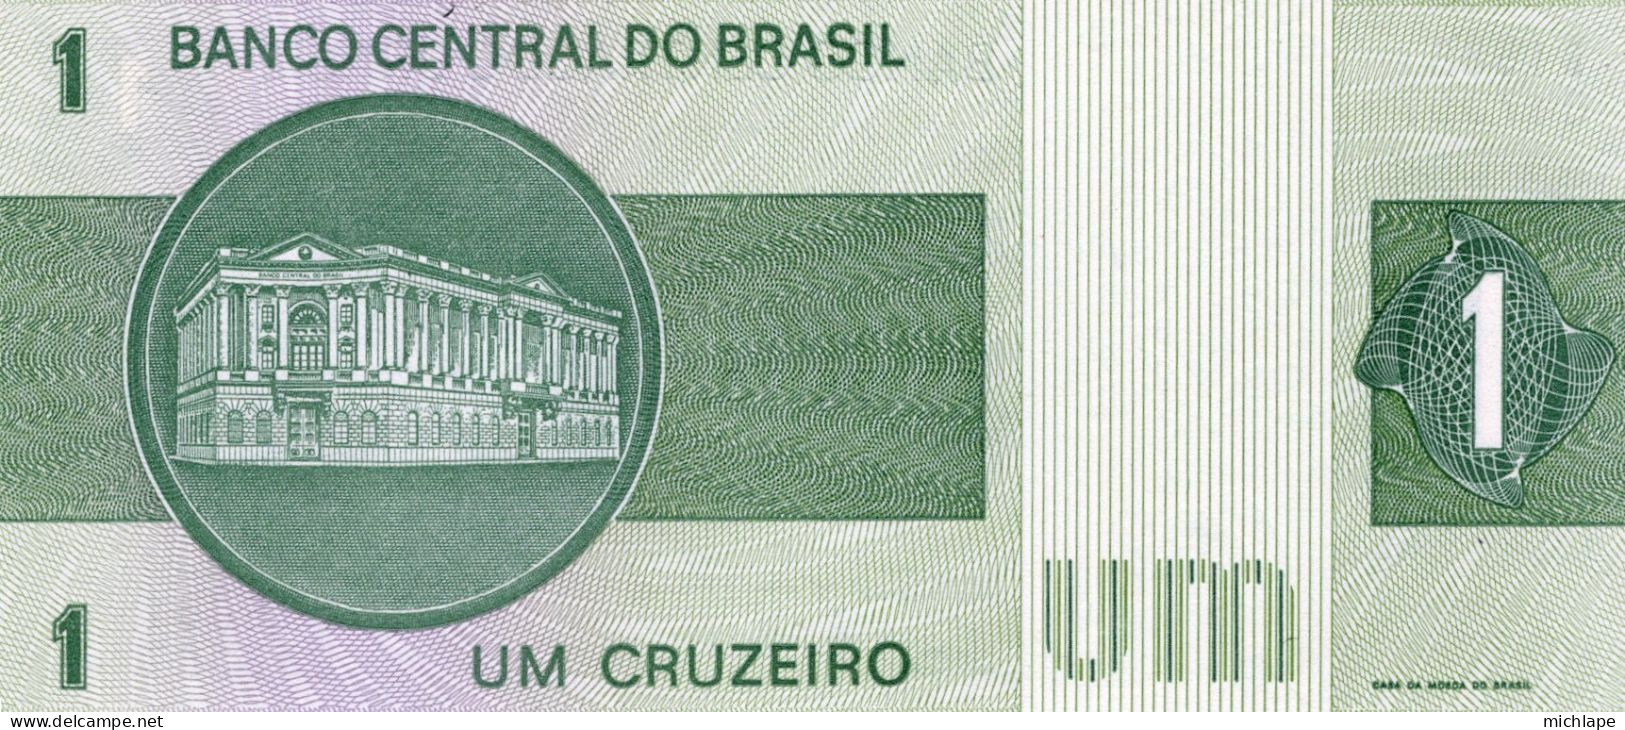 Brésil 1 Cruzeiro B15851 Billet Neuf - Brésil